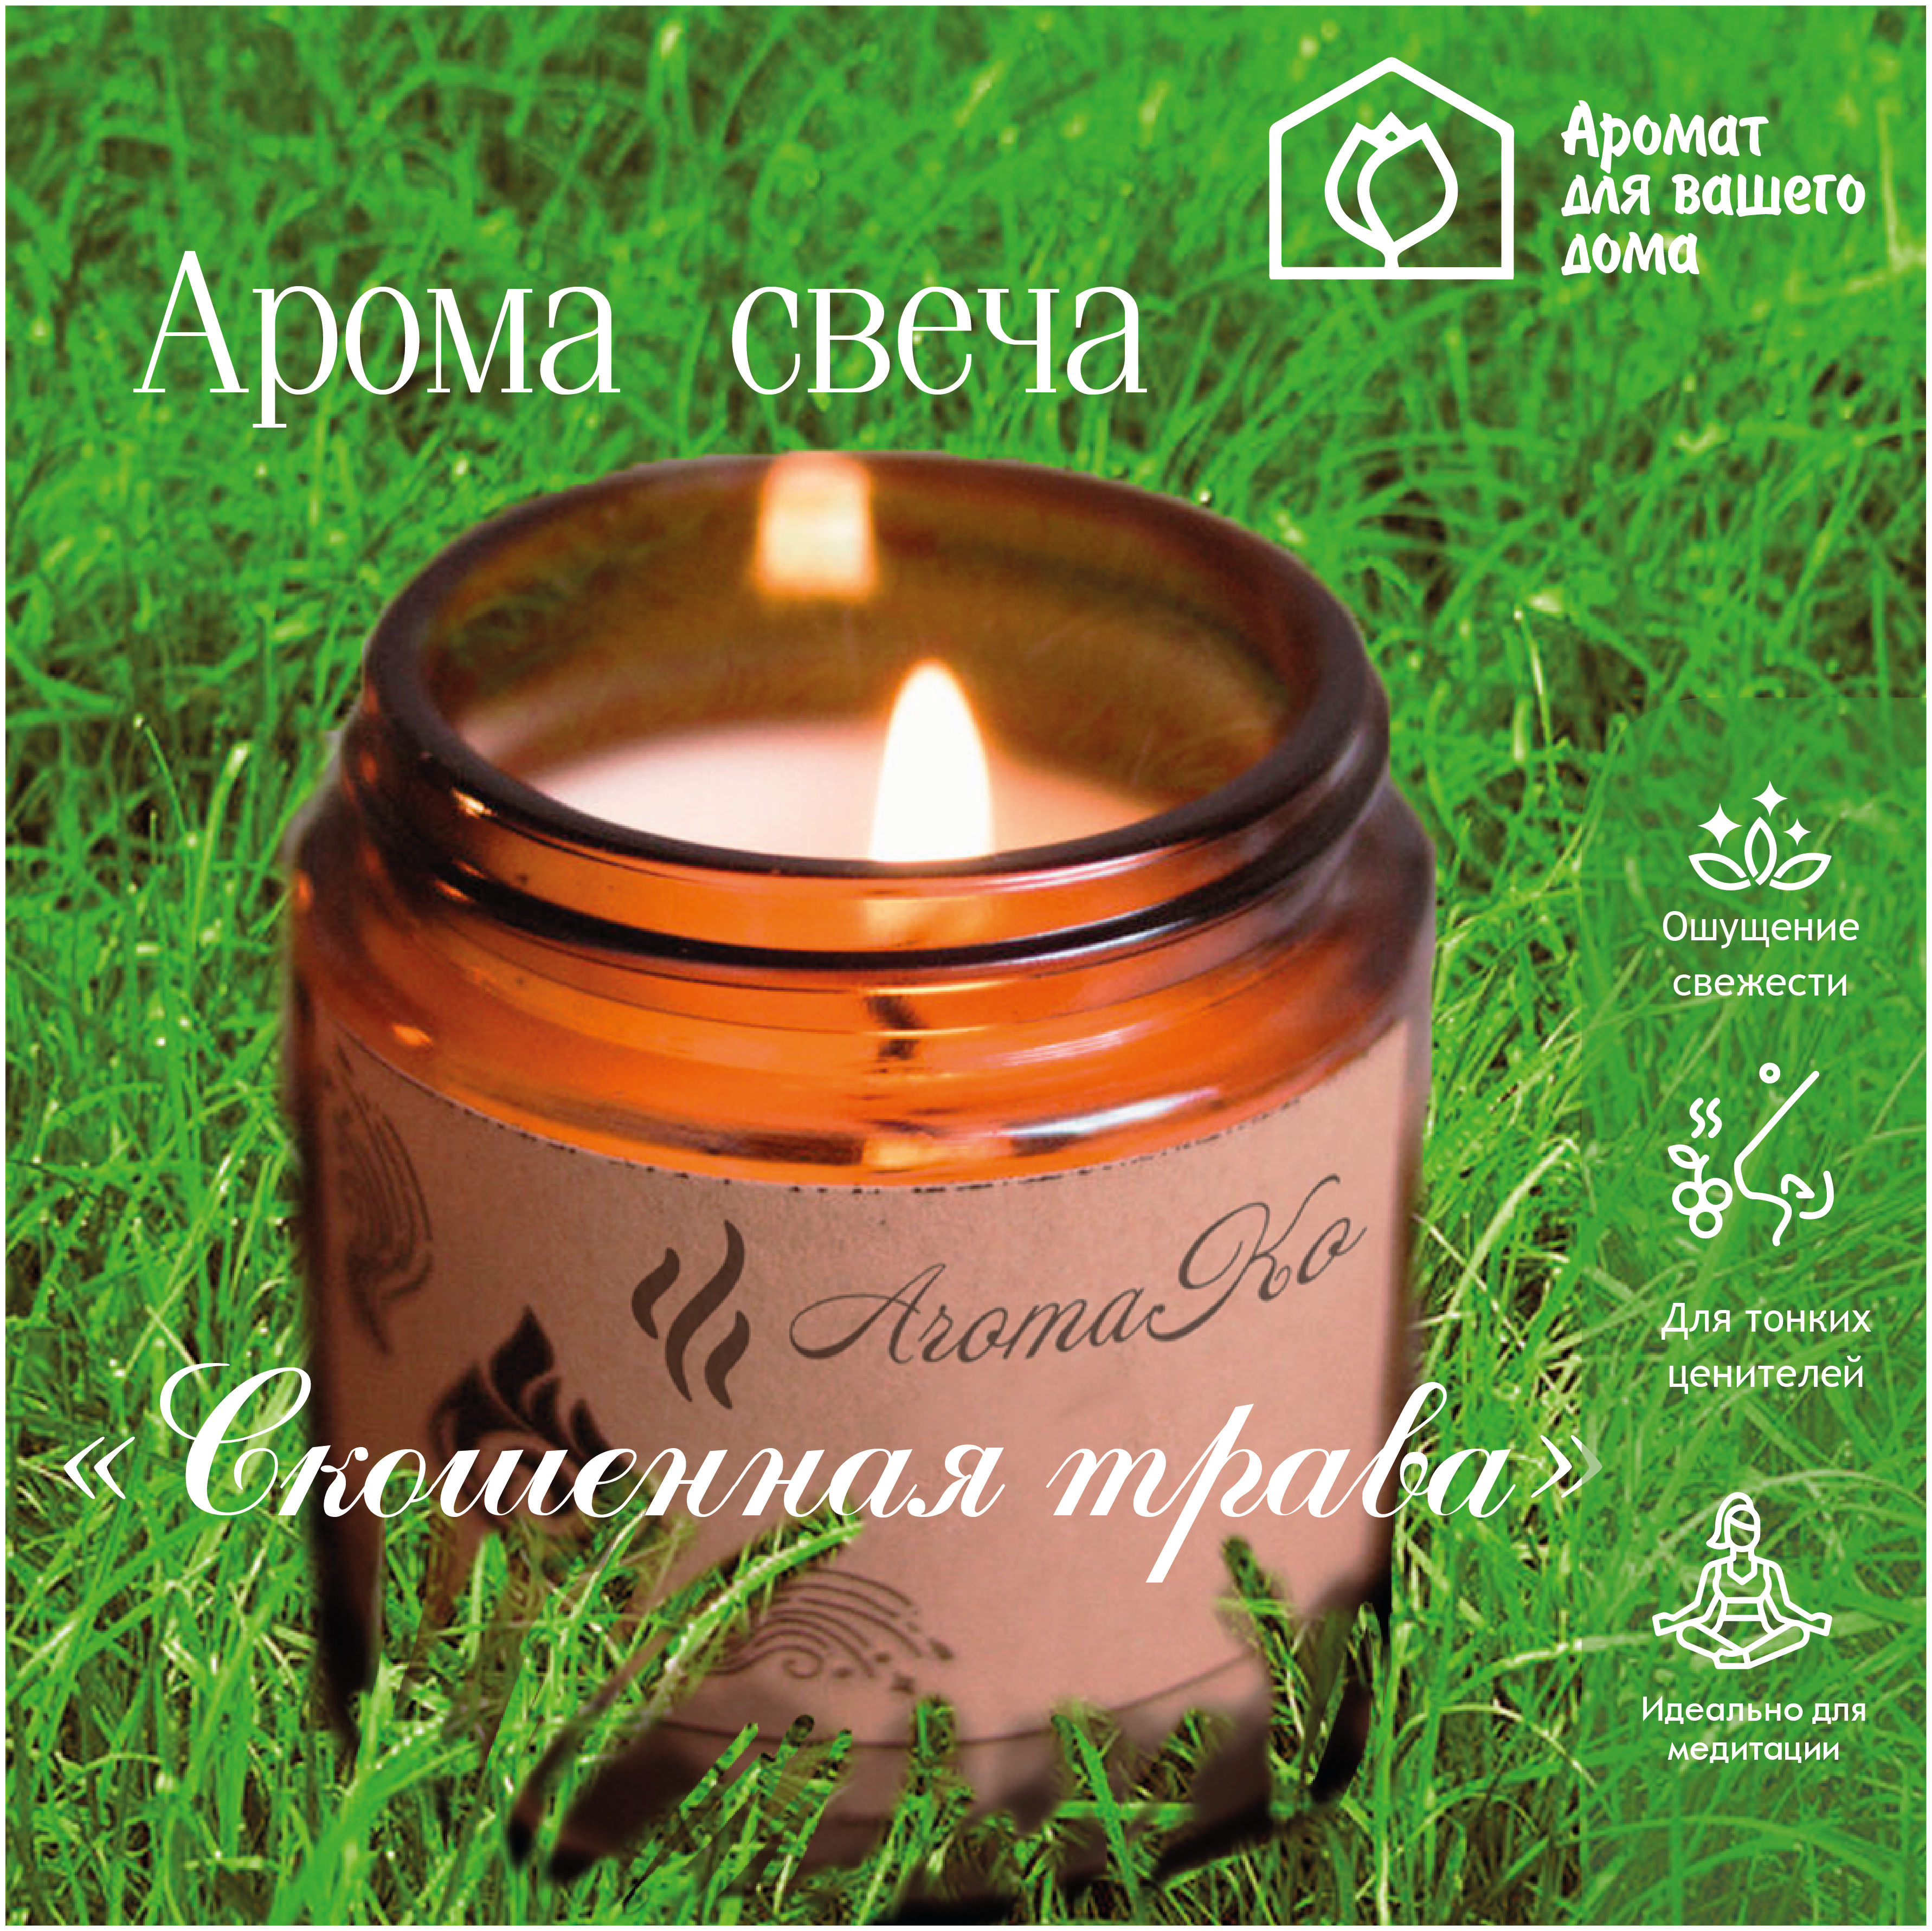 Ароматическая свеча Скошенная трава AROMAKO 200 гр/аромасвеча из натурального воска в стеклянной банке с деревянным фитилём 60 часов горения